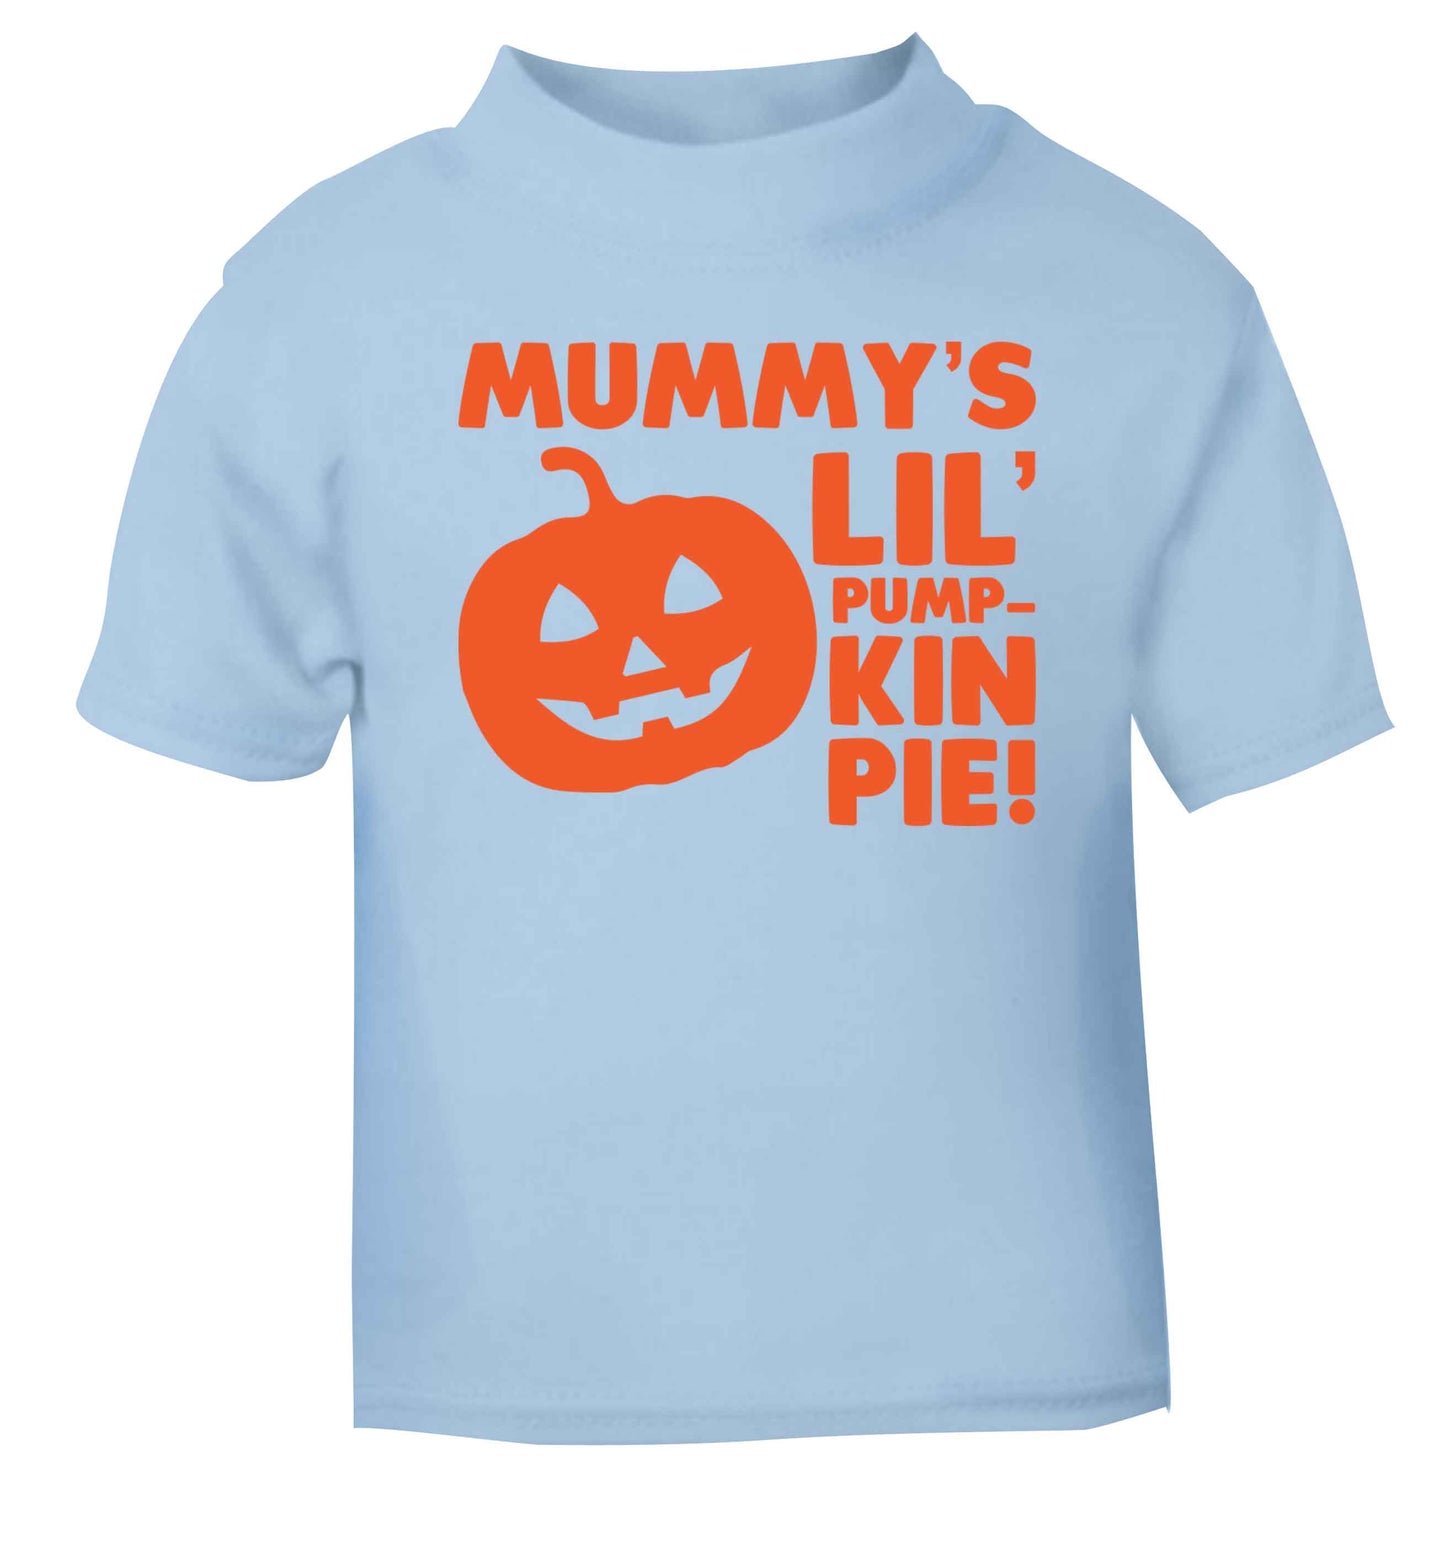 Mummy's lil' pumpkin pie light blue baby toddler Tshirt 2 Years